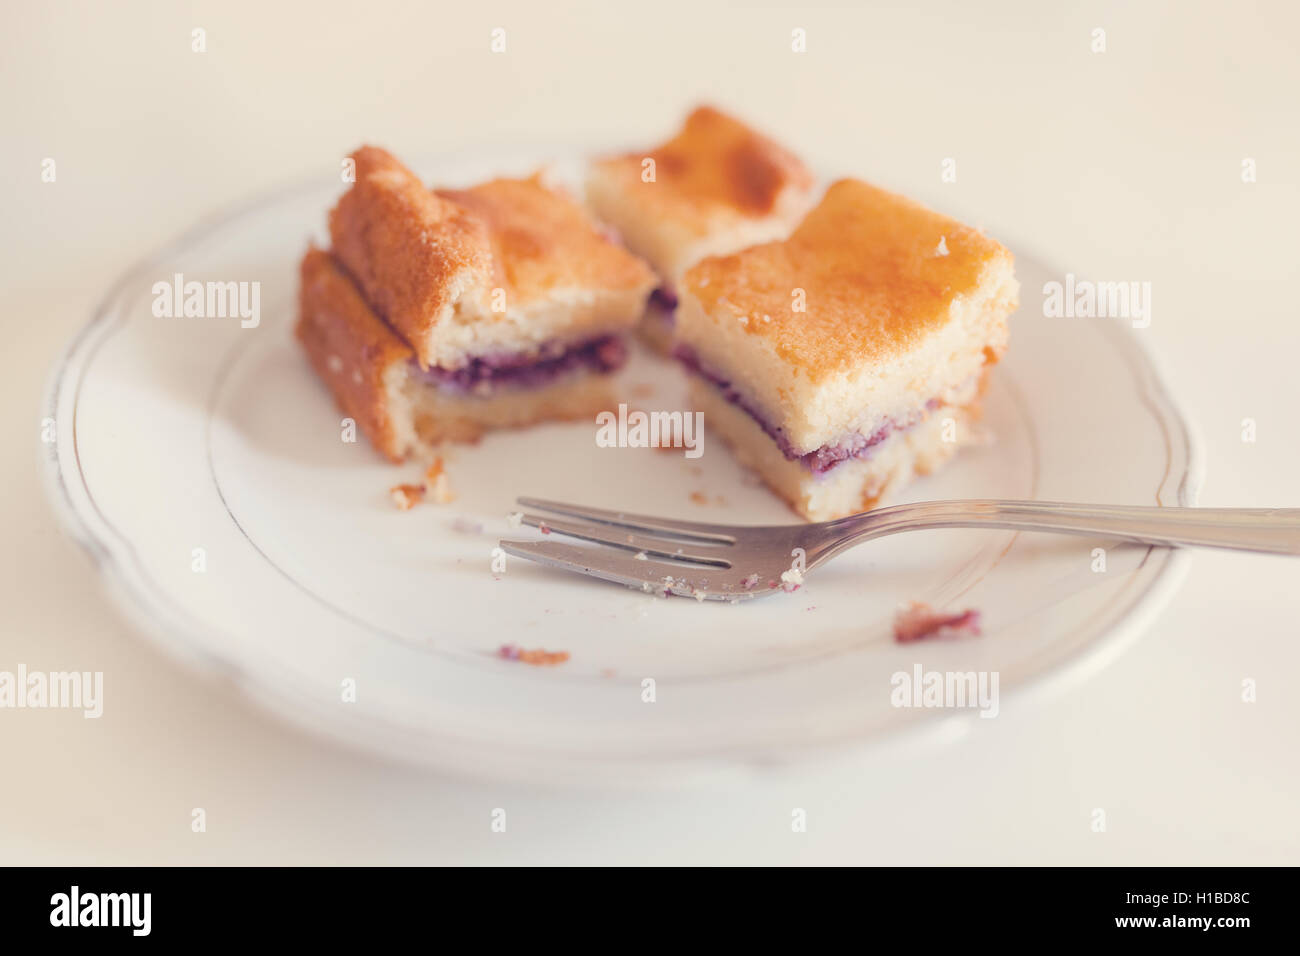 Scheiben an glutenfreien hausgemachten Kuchen mit Heidelbeeren auf dem Teller füllen.  Post mit Matten Filter verarbeitet. Stockfoto